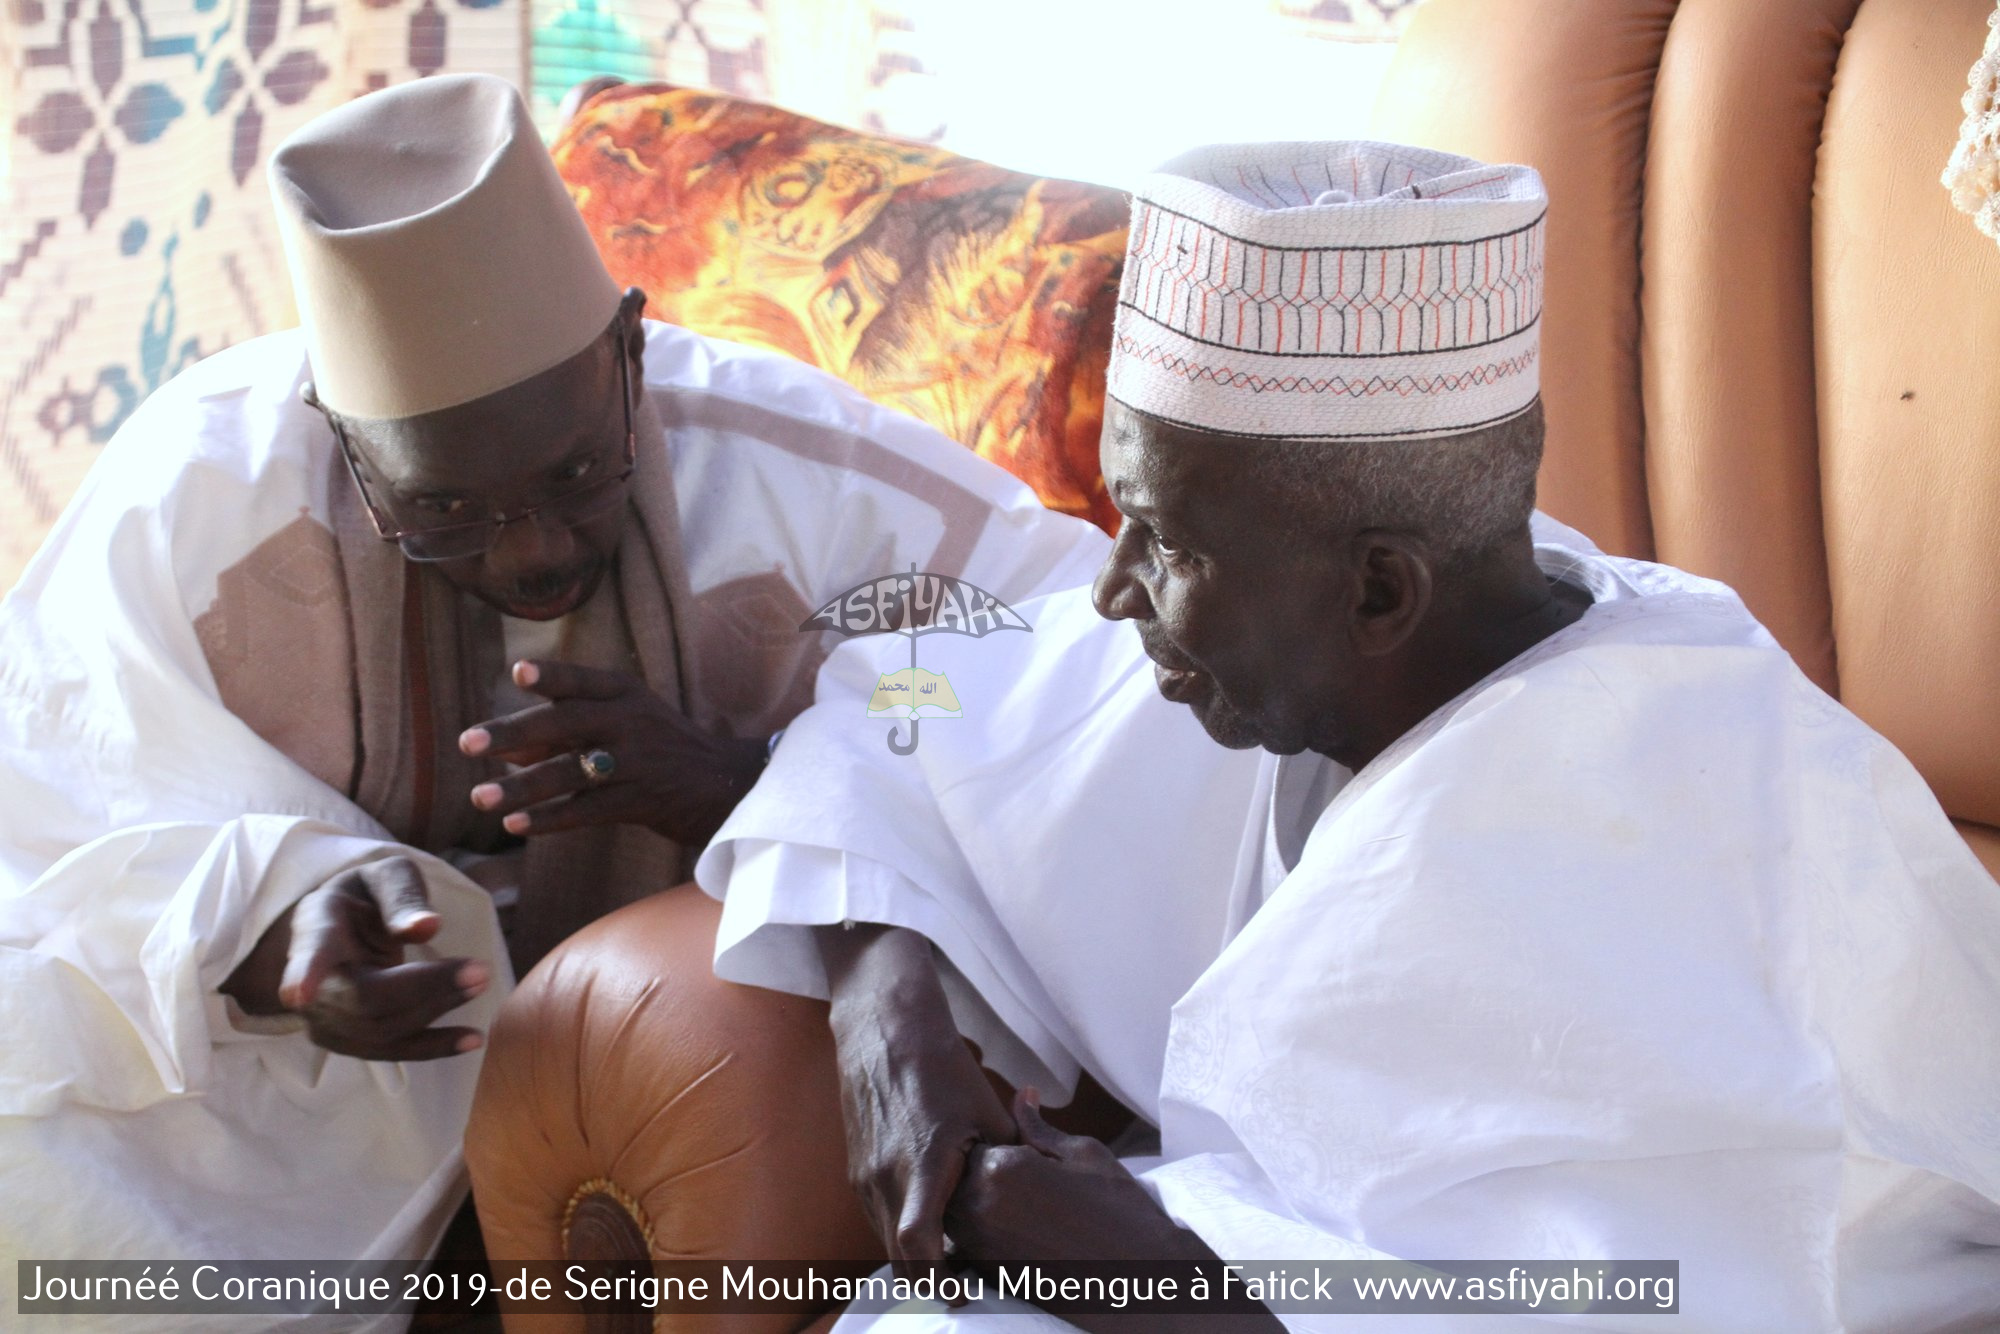 PHOTOS - FATICK - Les Images de la Journée Coranique 2019 de Serigne El Hadj Mouhamadou Mbengue 